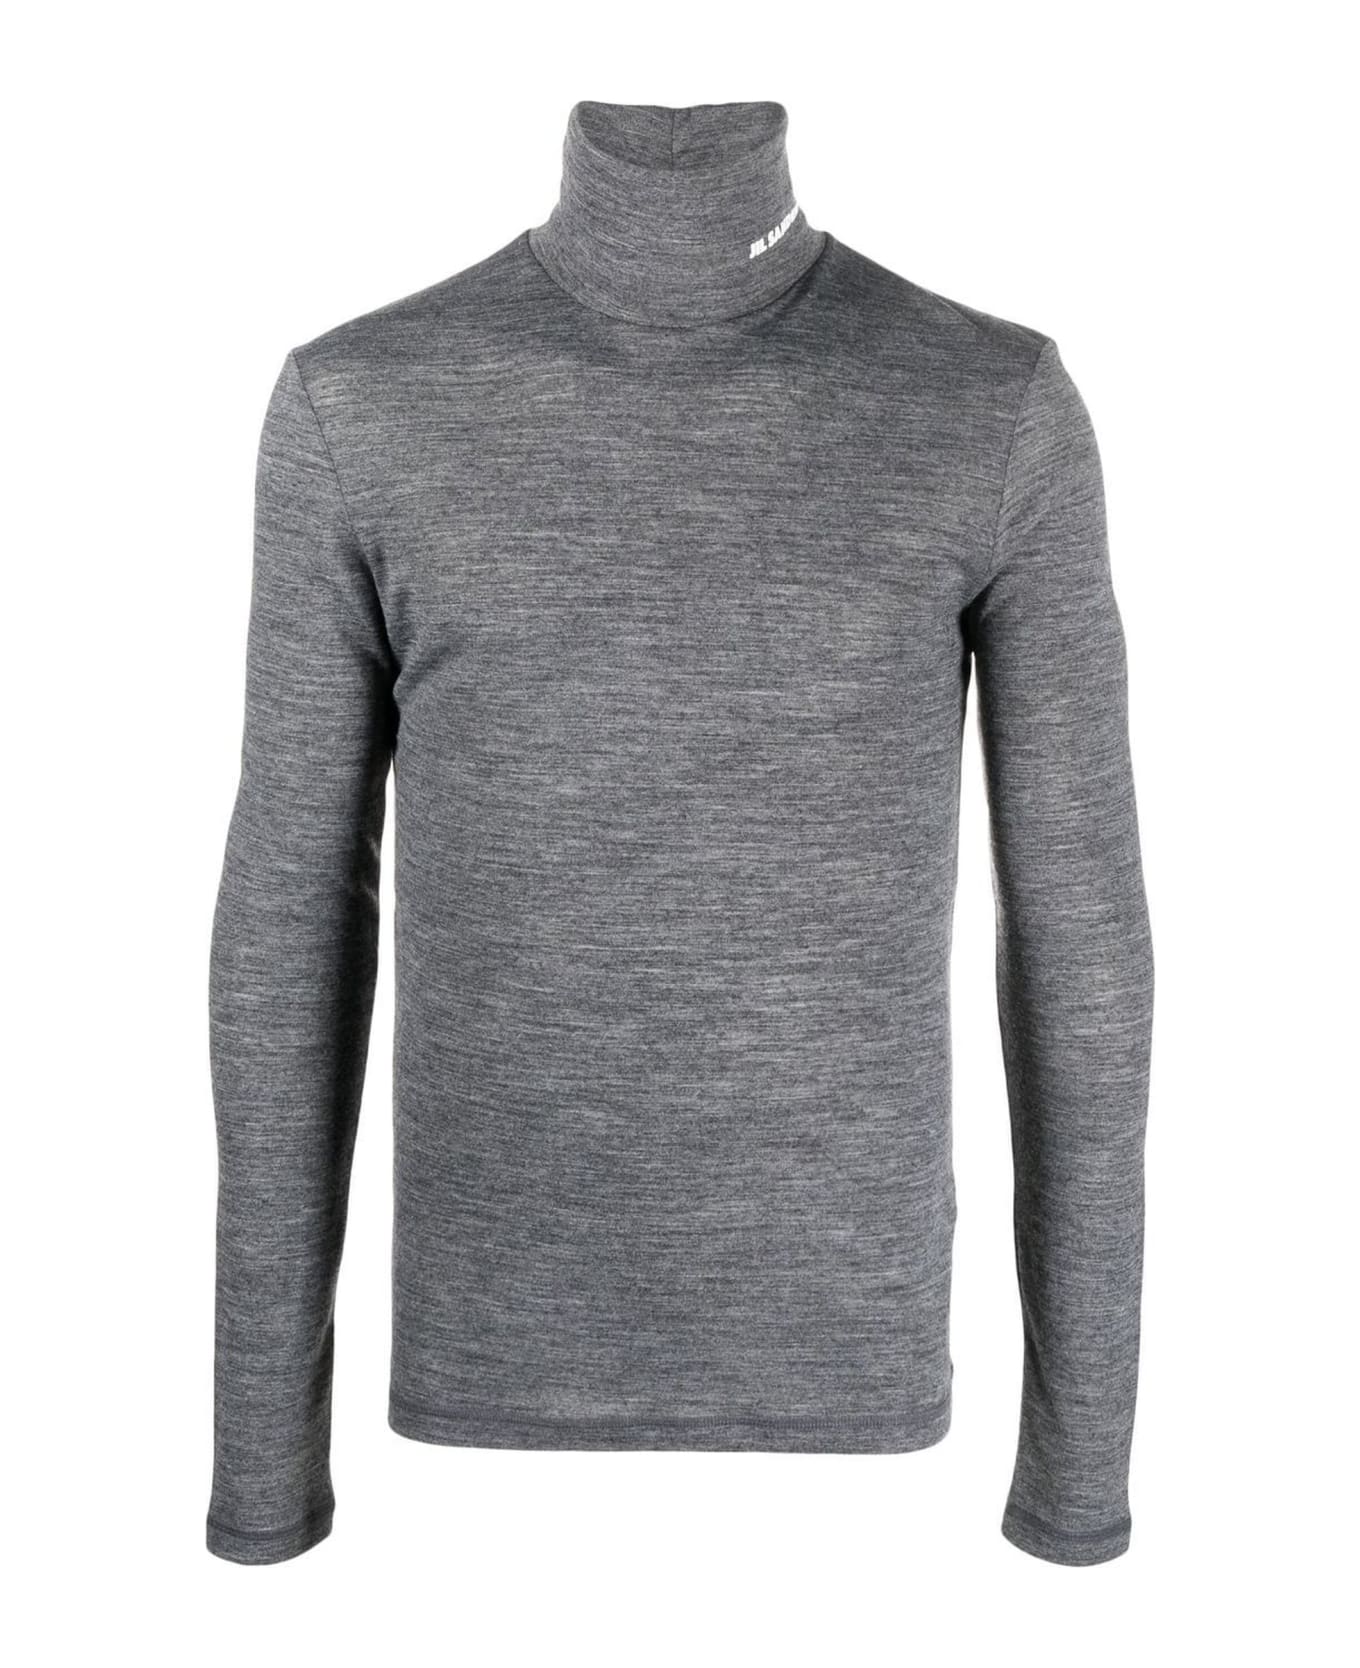 Jil Sander Melange Grey Polyester Blend Sweater - Grey ニットウェア